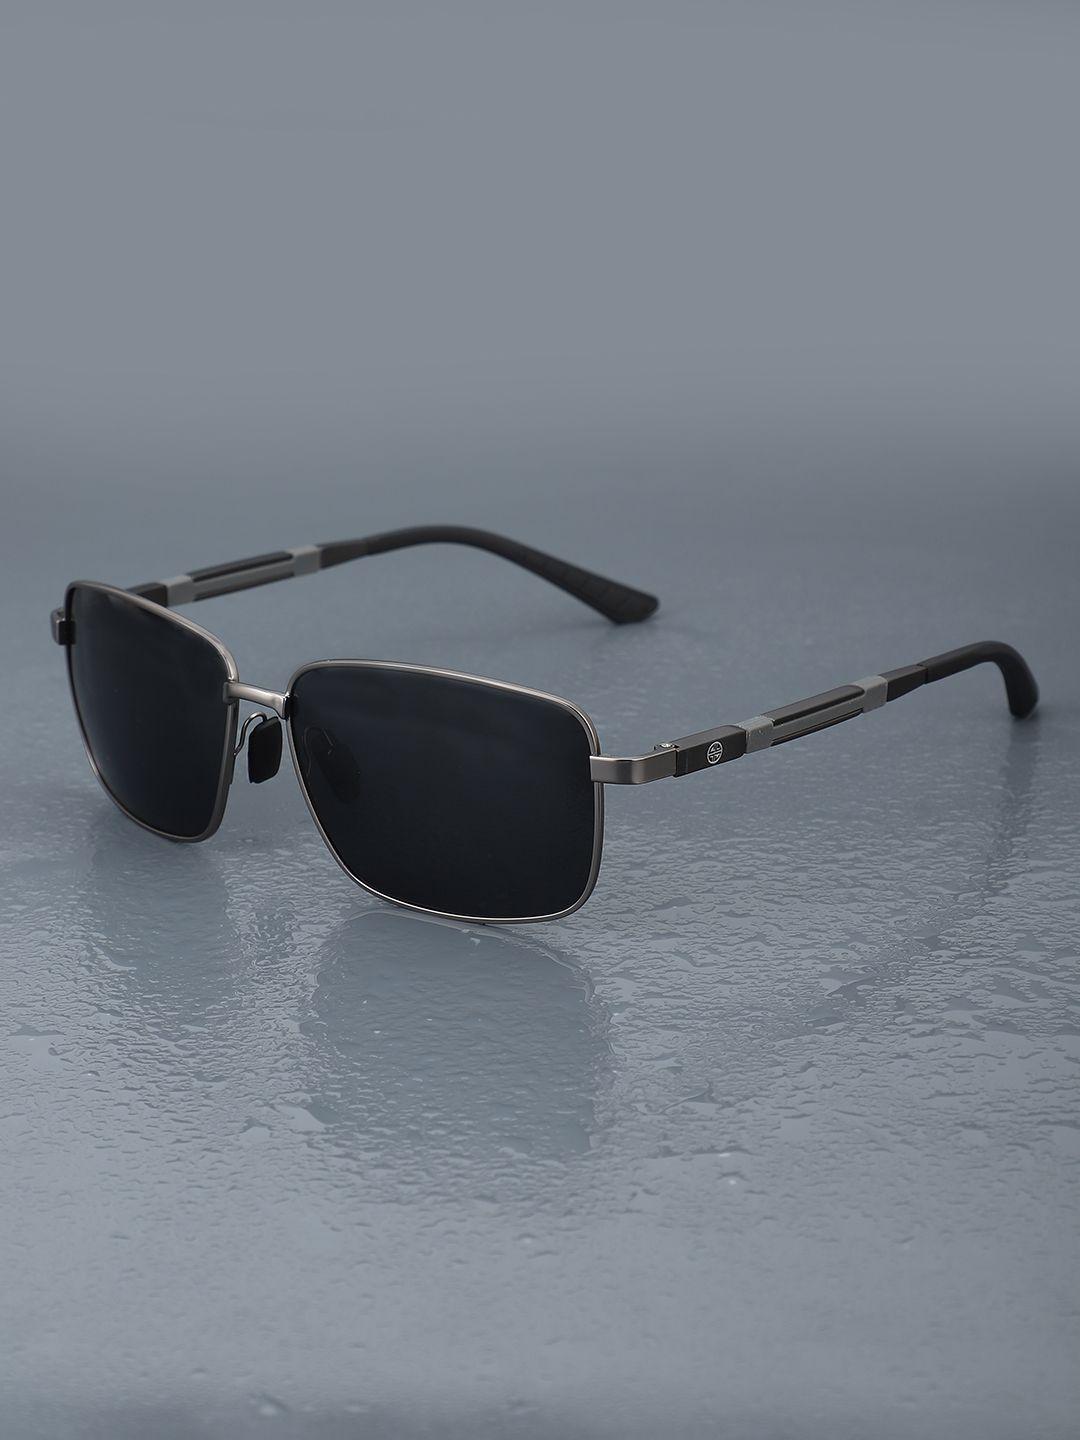 carlton-london-premium-men-aviator-sunglasses-with-polarised-&-uv-protected-lens-clsm116